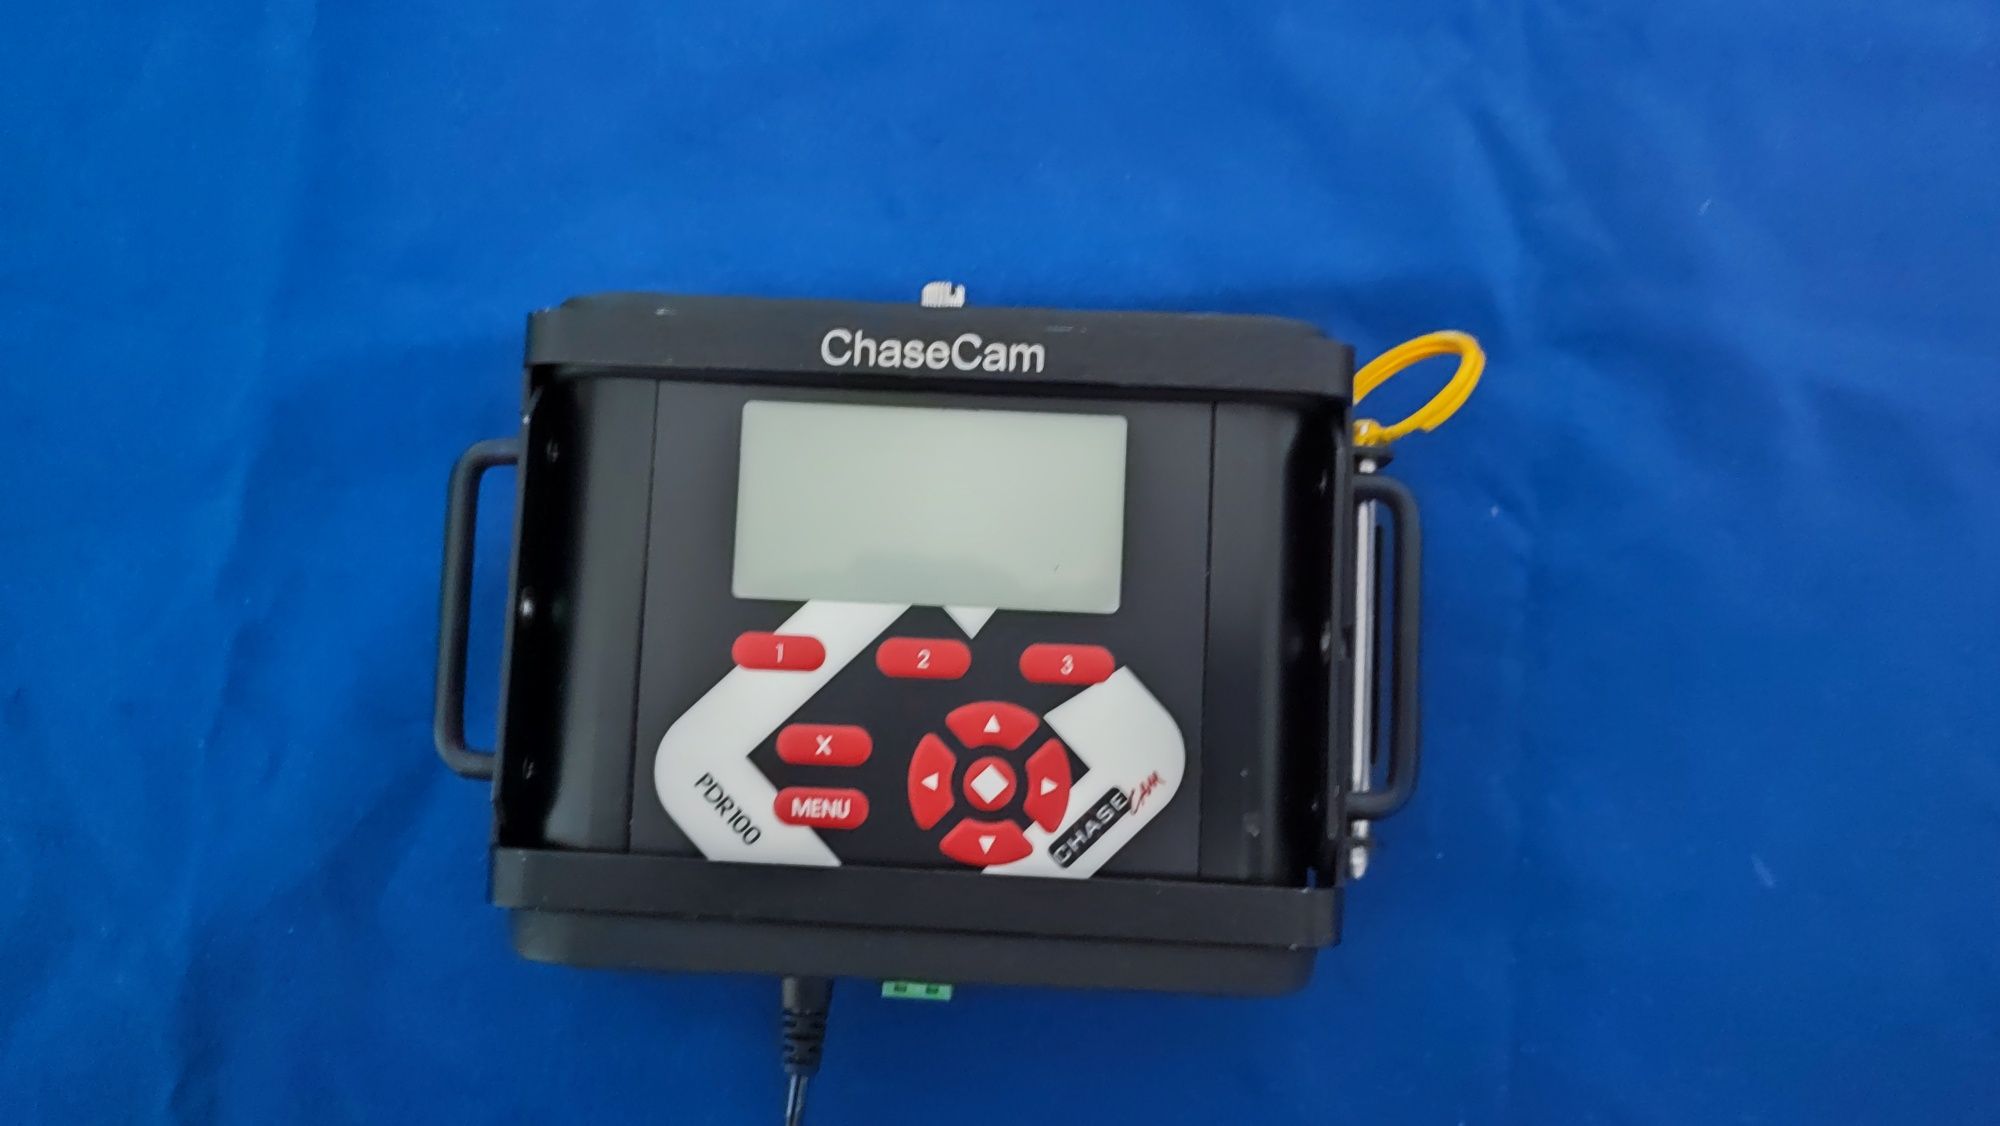 CHASE CAM model PDR100 fără cabluri.